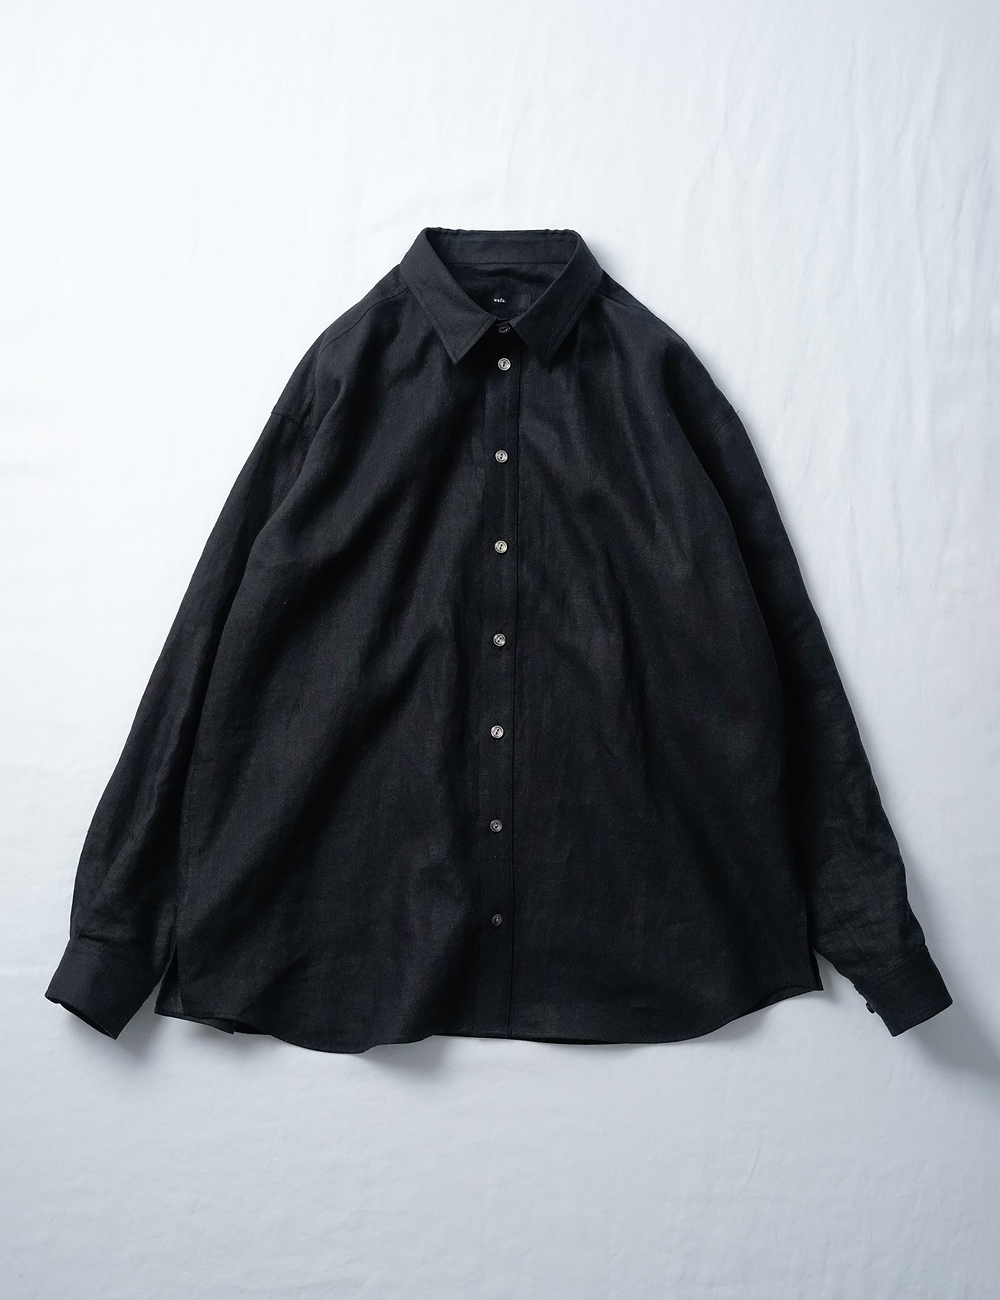 【wafu】ゆるっと感が絶妙にカッコい男女兼用シャツ/ 黒色 t021j-bck1